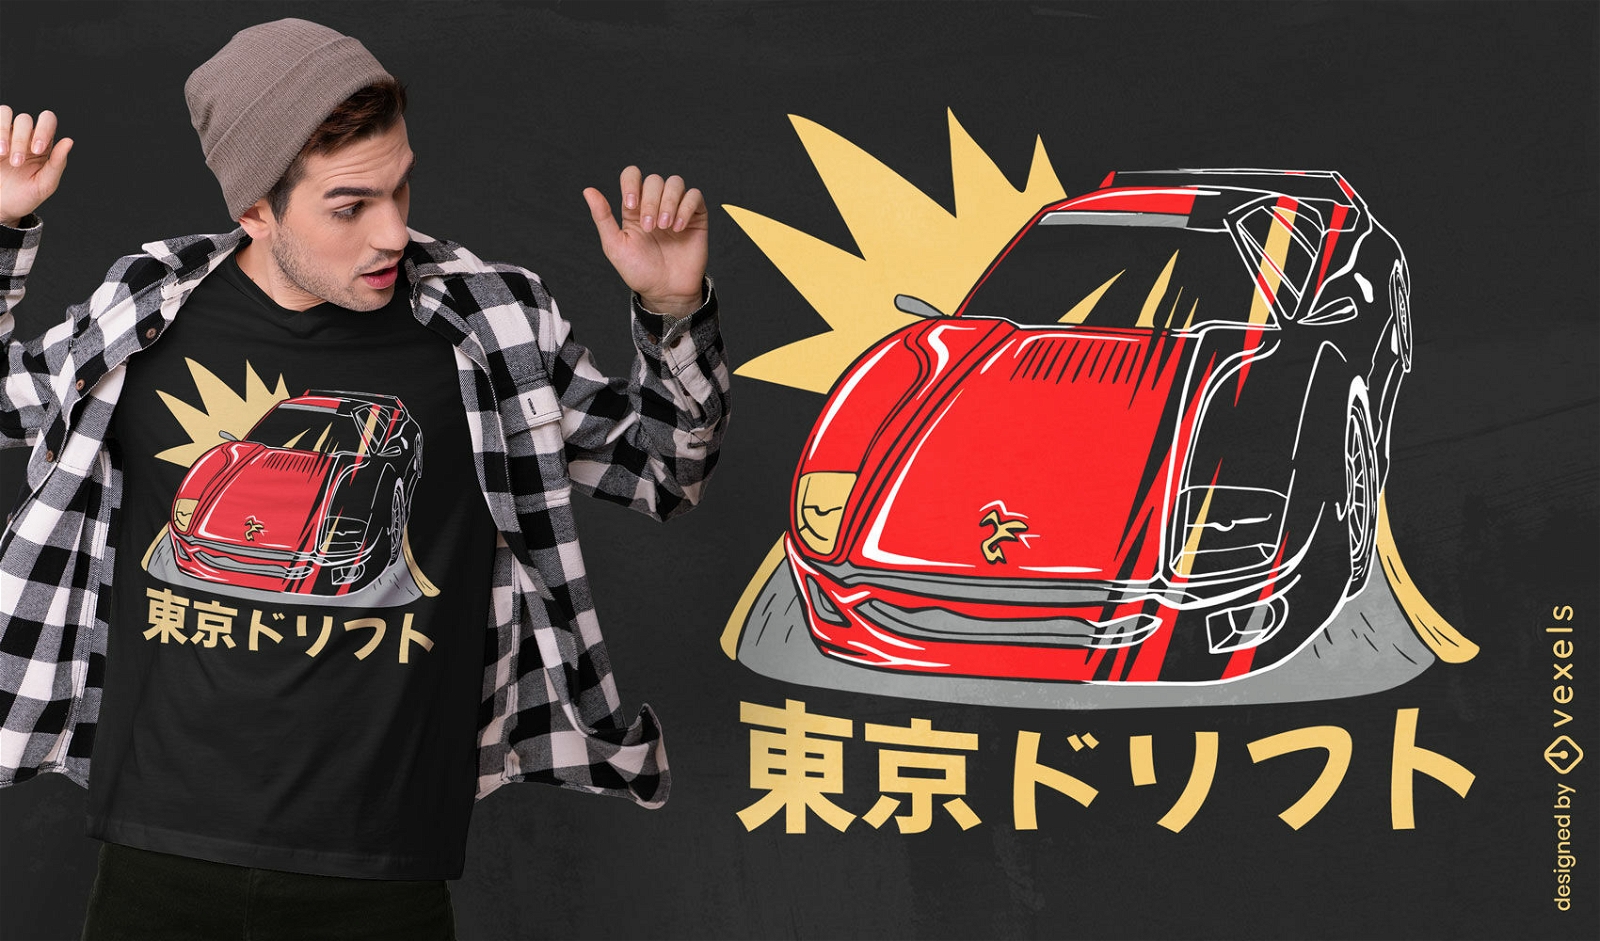 Diseño de camiseta de auto deportivo japonés y texto.